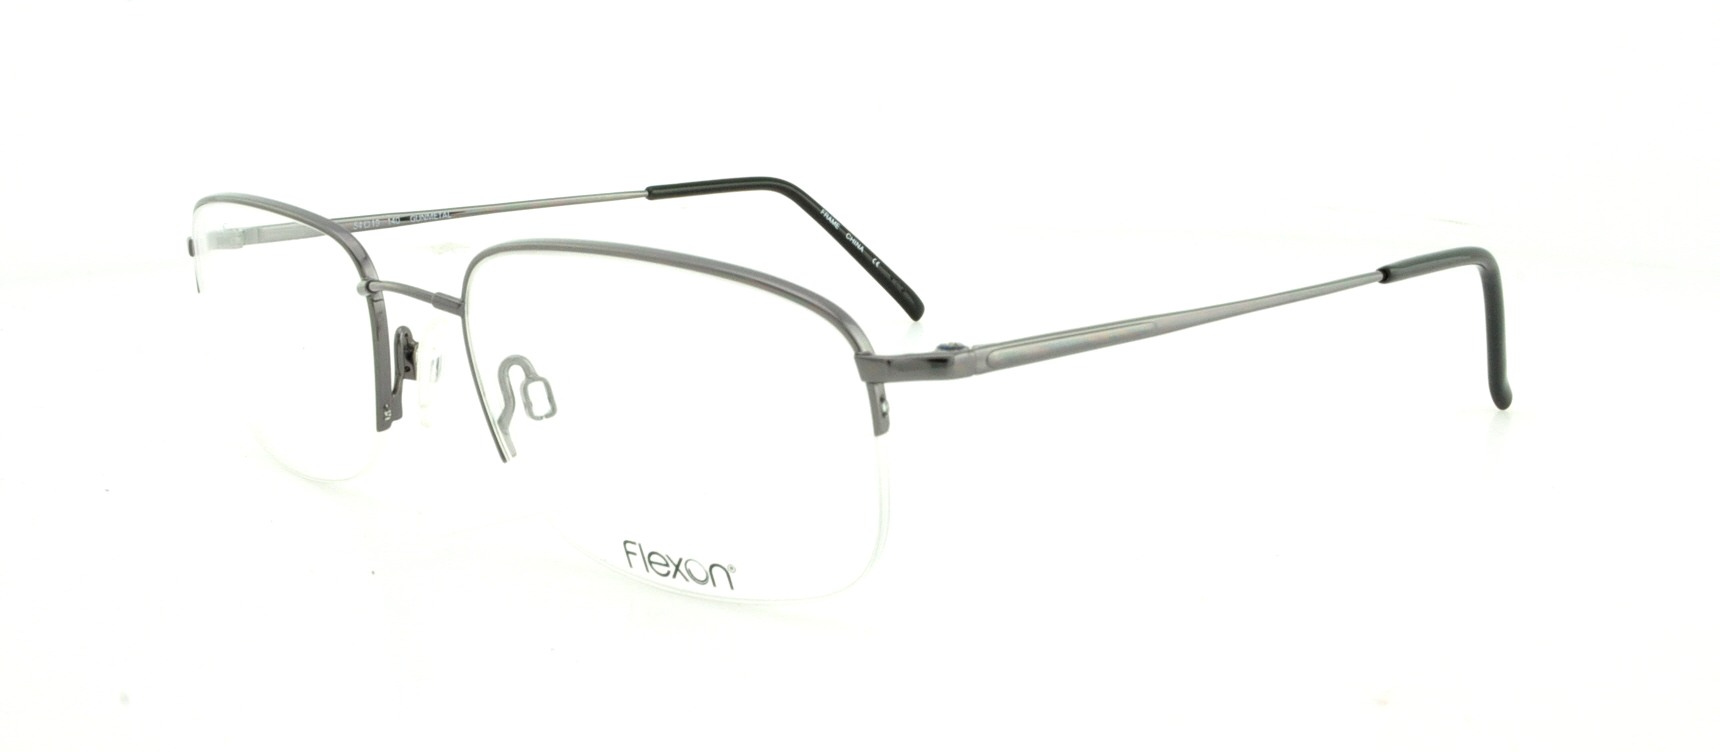 Designer Frames Outlet. Flexon Eyeglasses 606